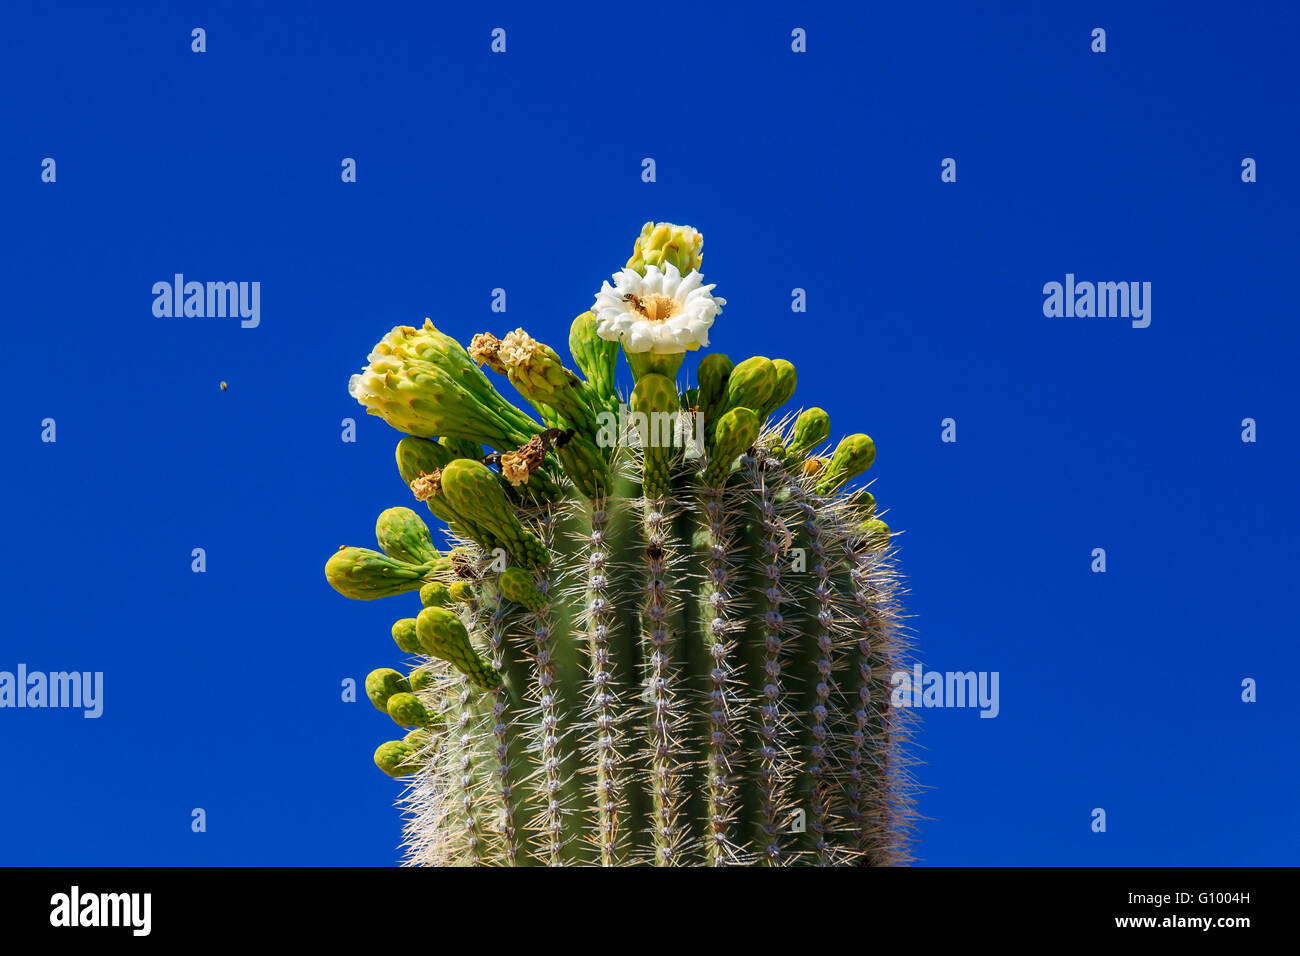 Una Mujer Fotografía A Las Flores En Una Rama De Cactus Saguaro